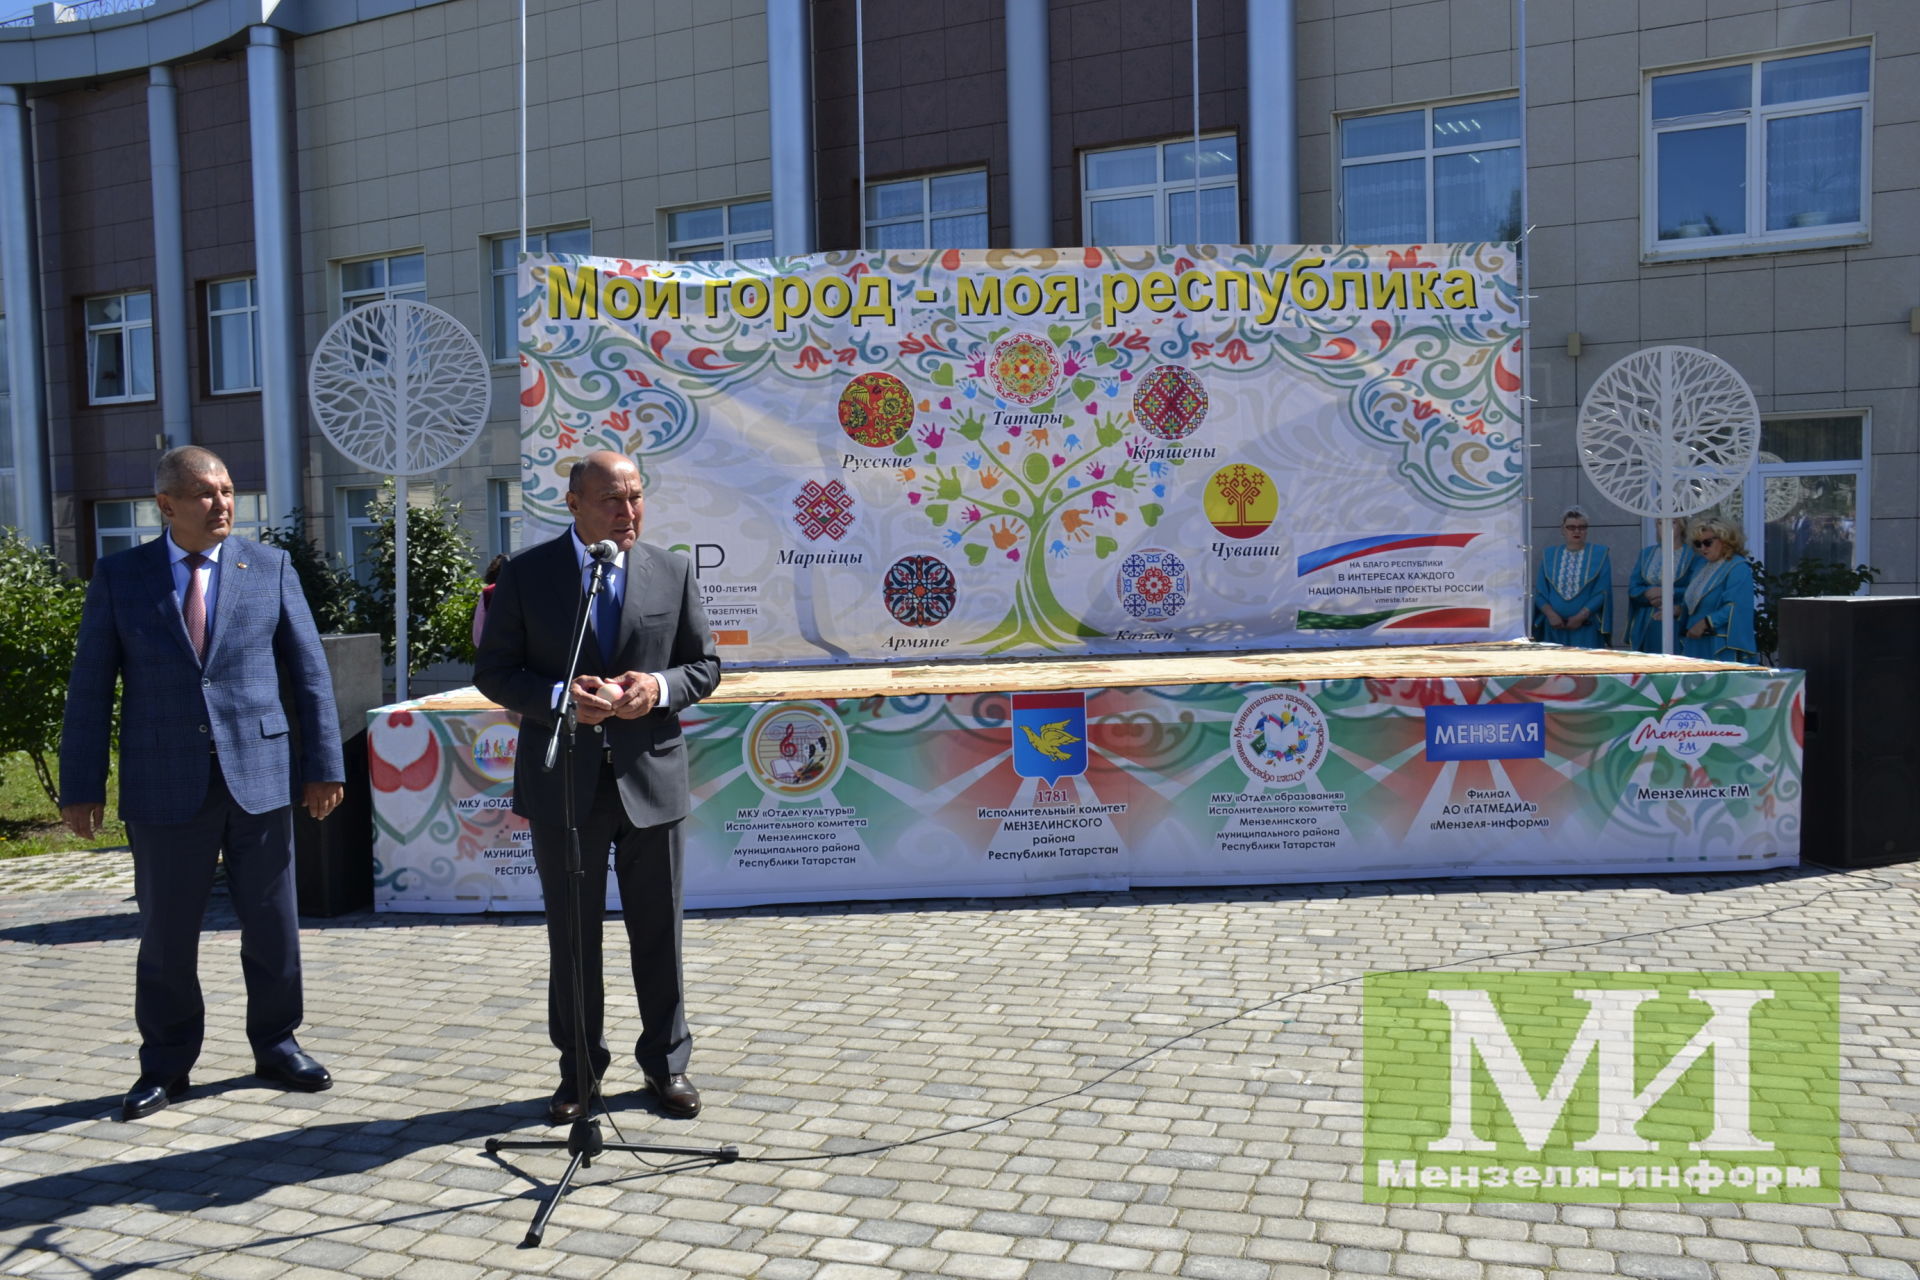 Заместитель председателя Госсовета РТ Марат Ахметов встретился в Мензелинске с работниками культуры, искусства и образования